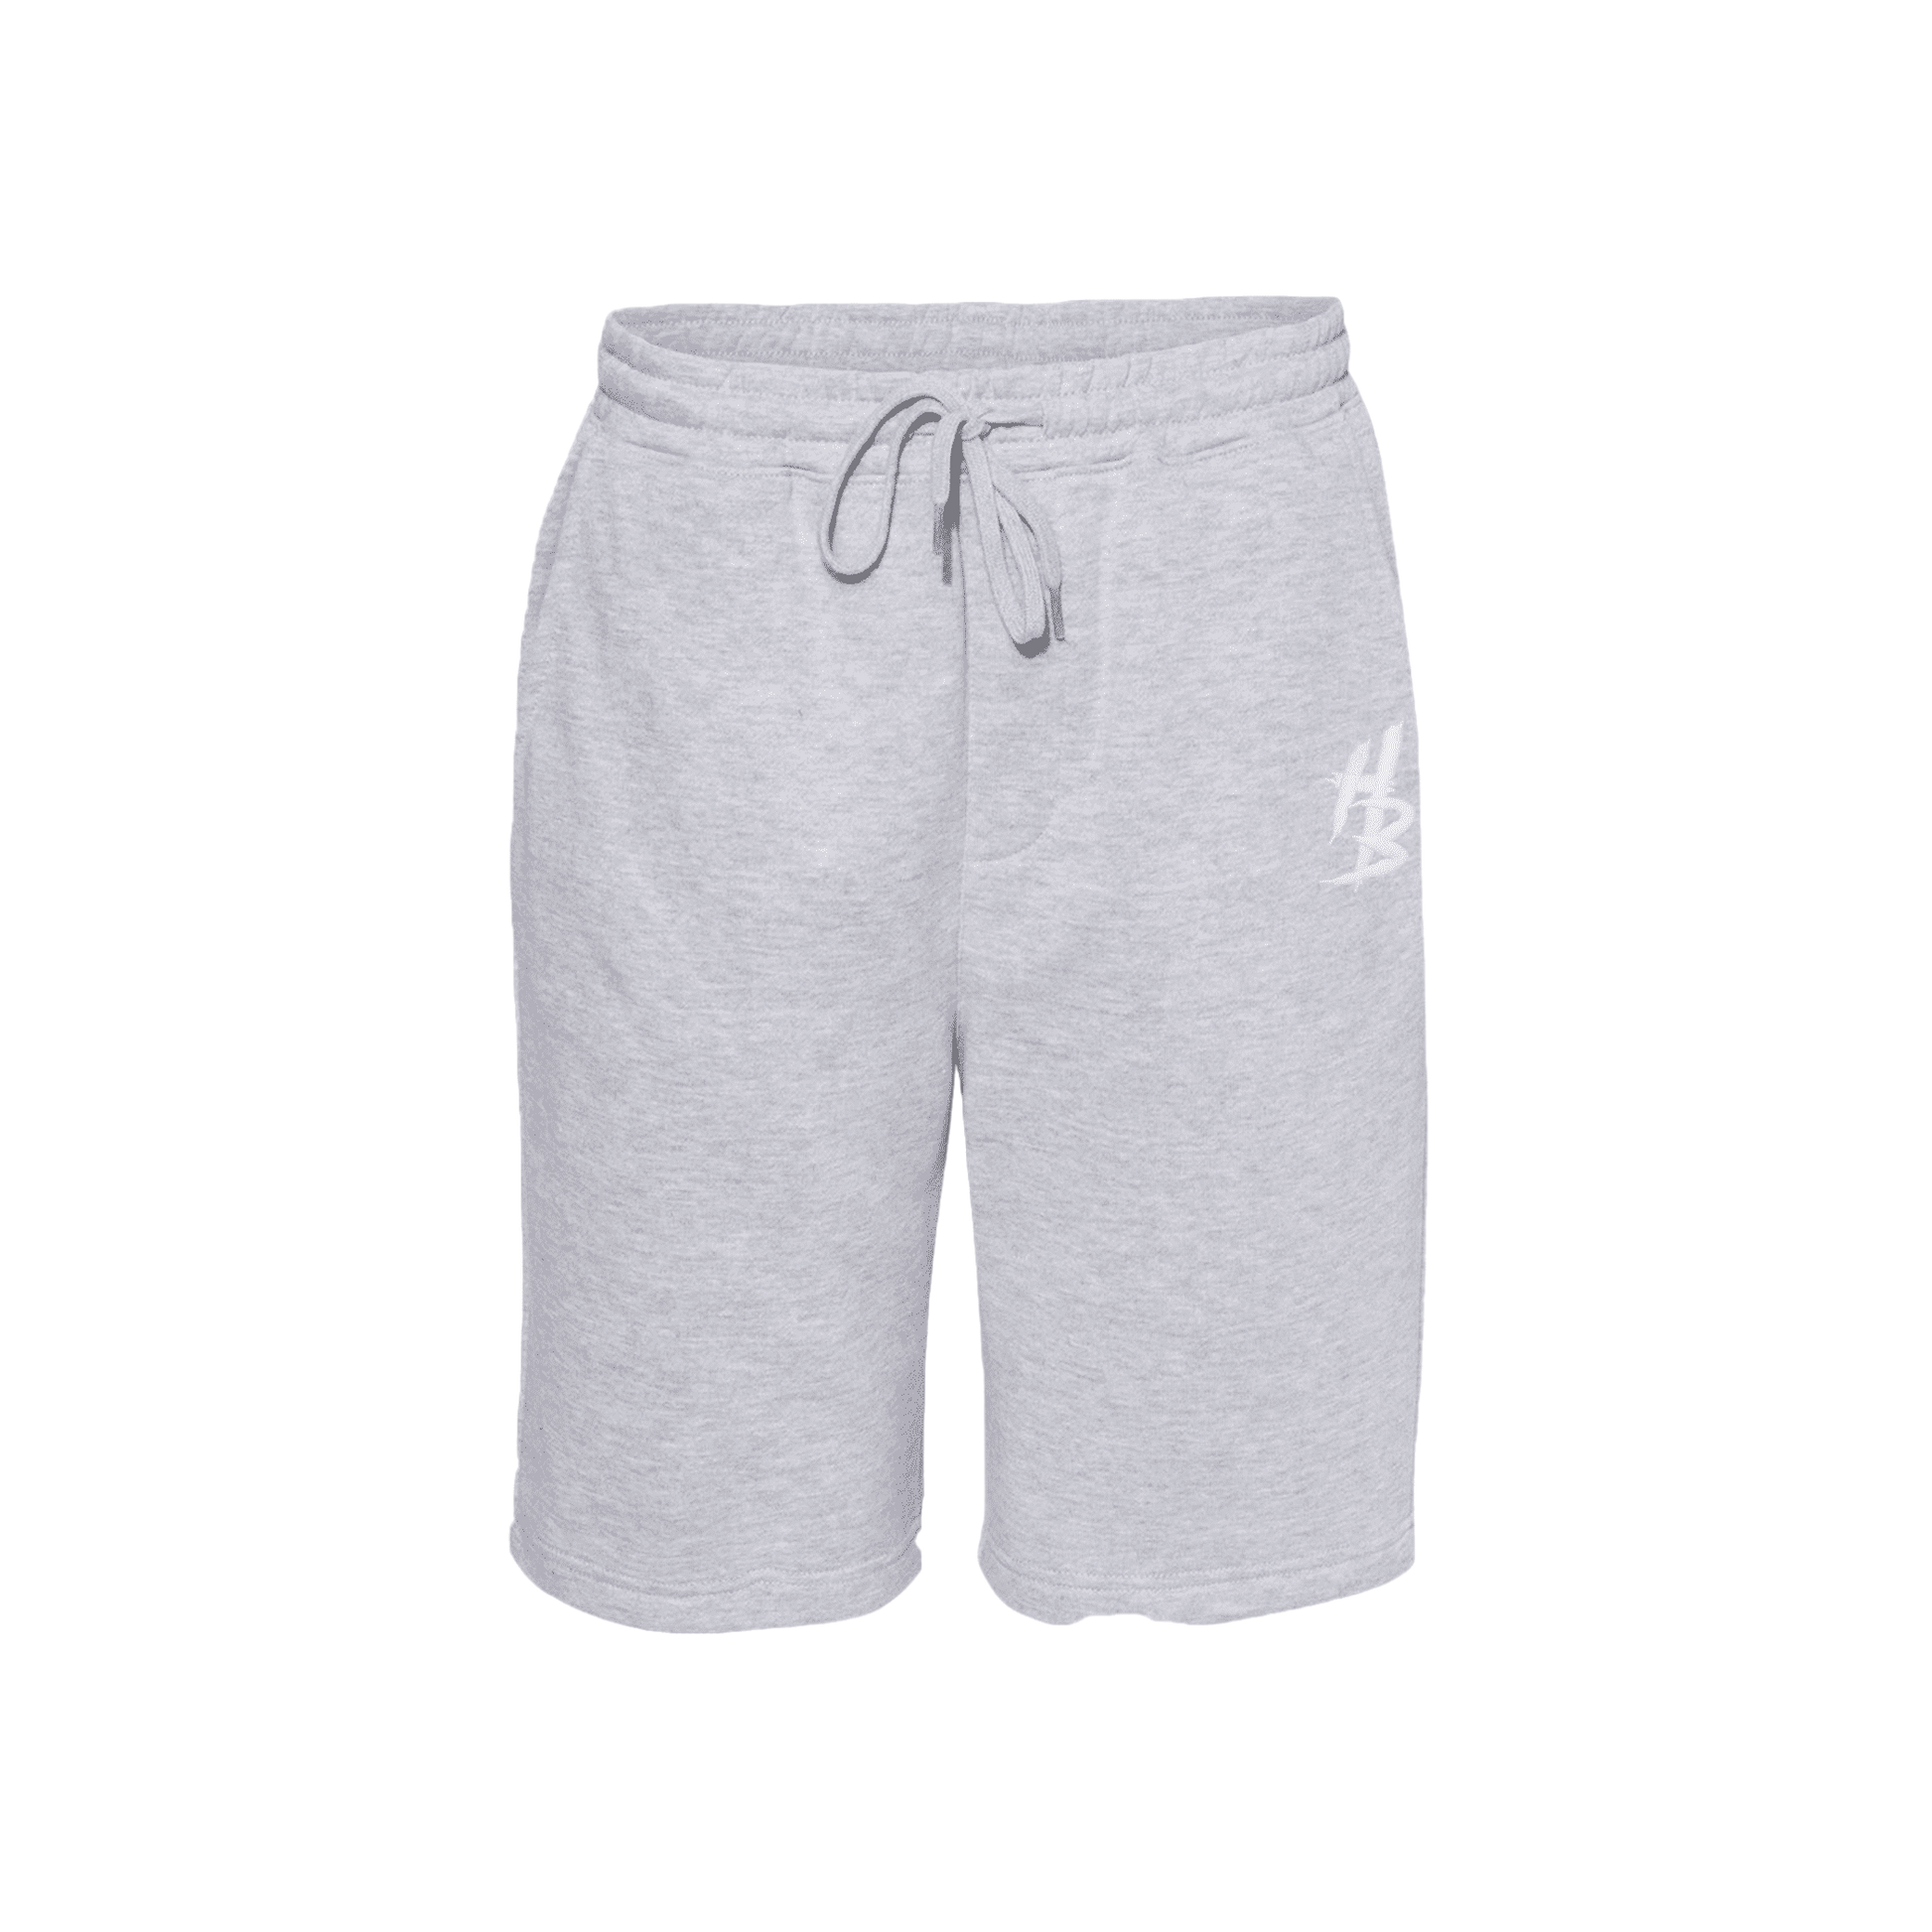 HB Grey Shorts - hdlm.brgnd